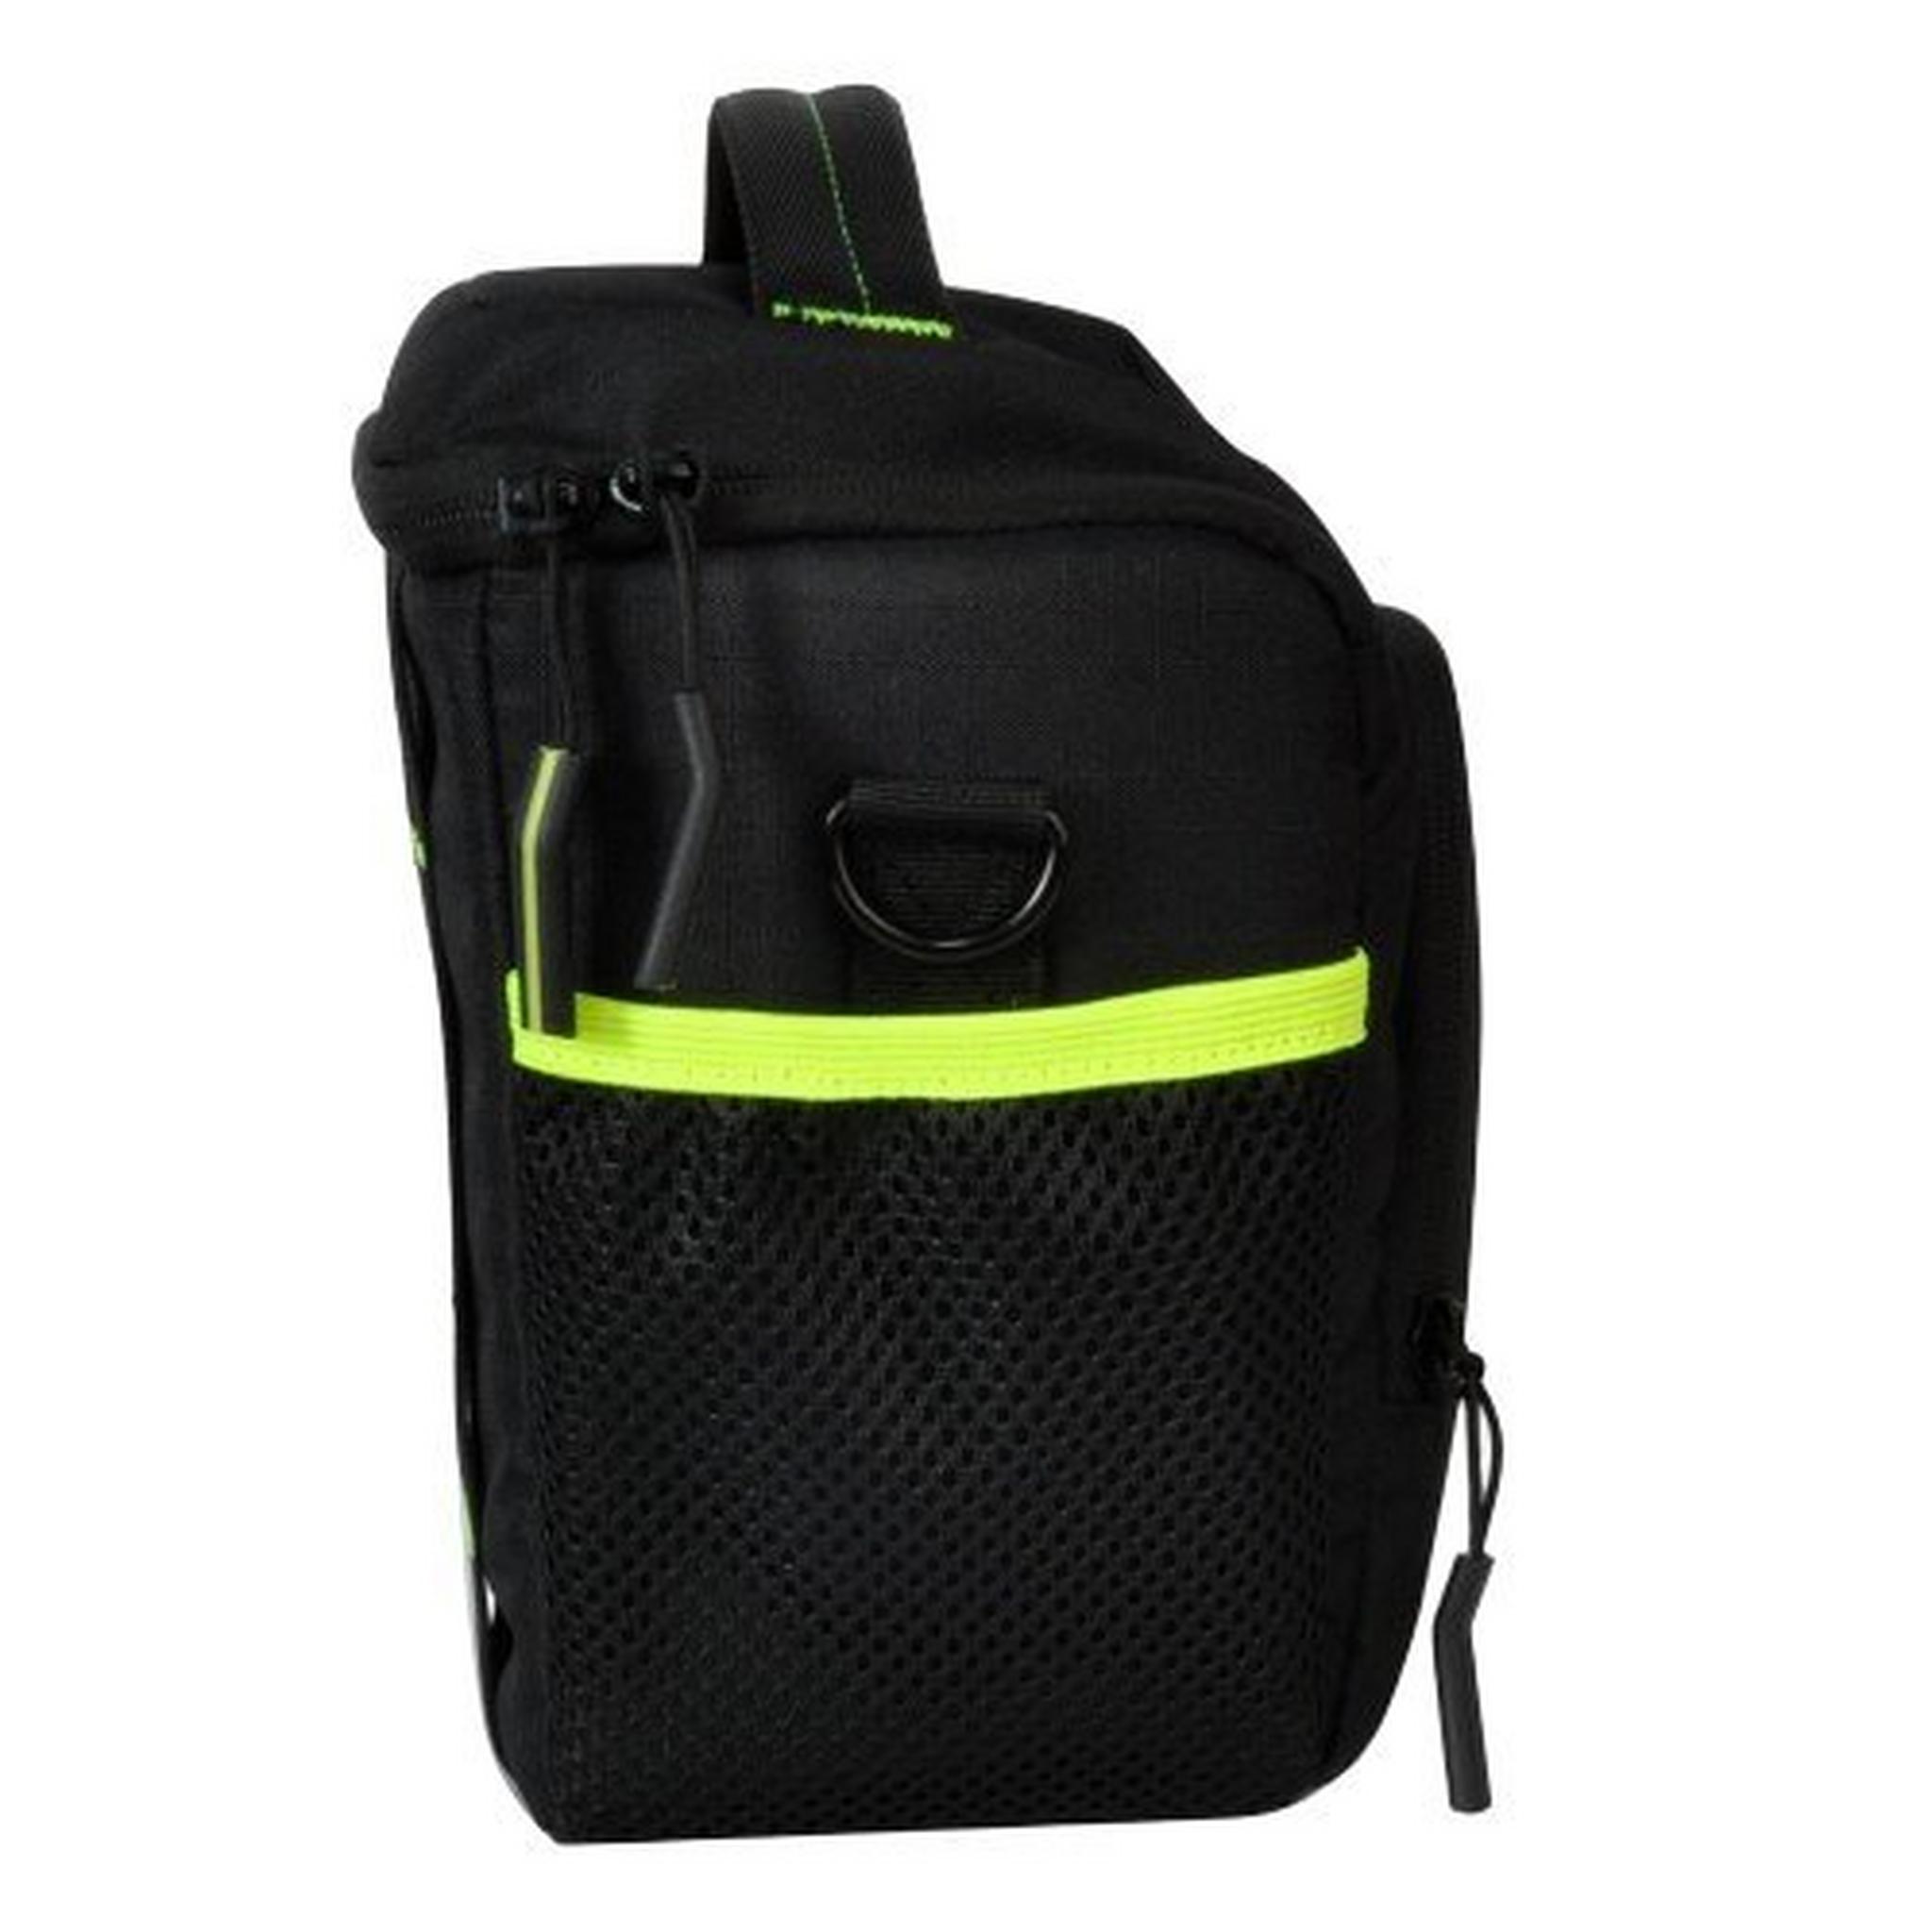 EQ DSLR Camera Shoulder Bag, ECB013310BS – Black